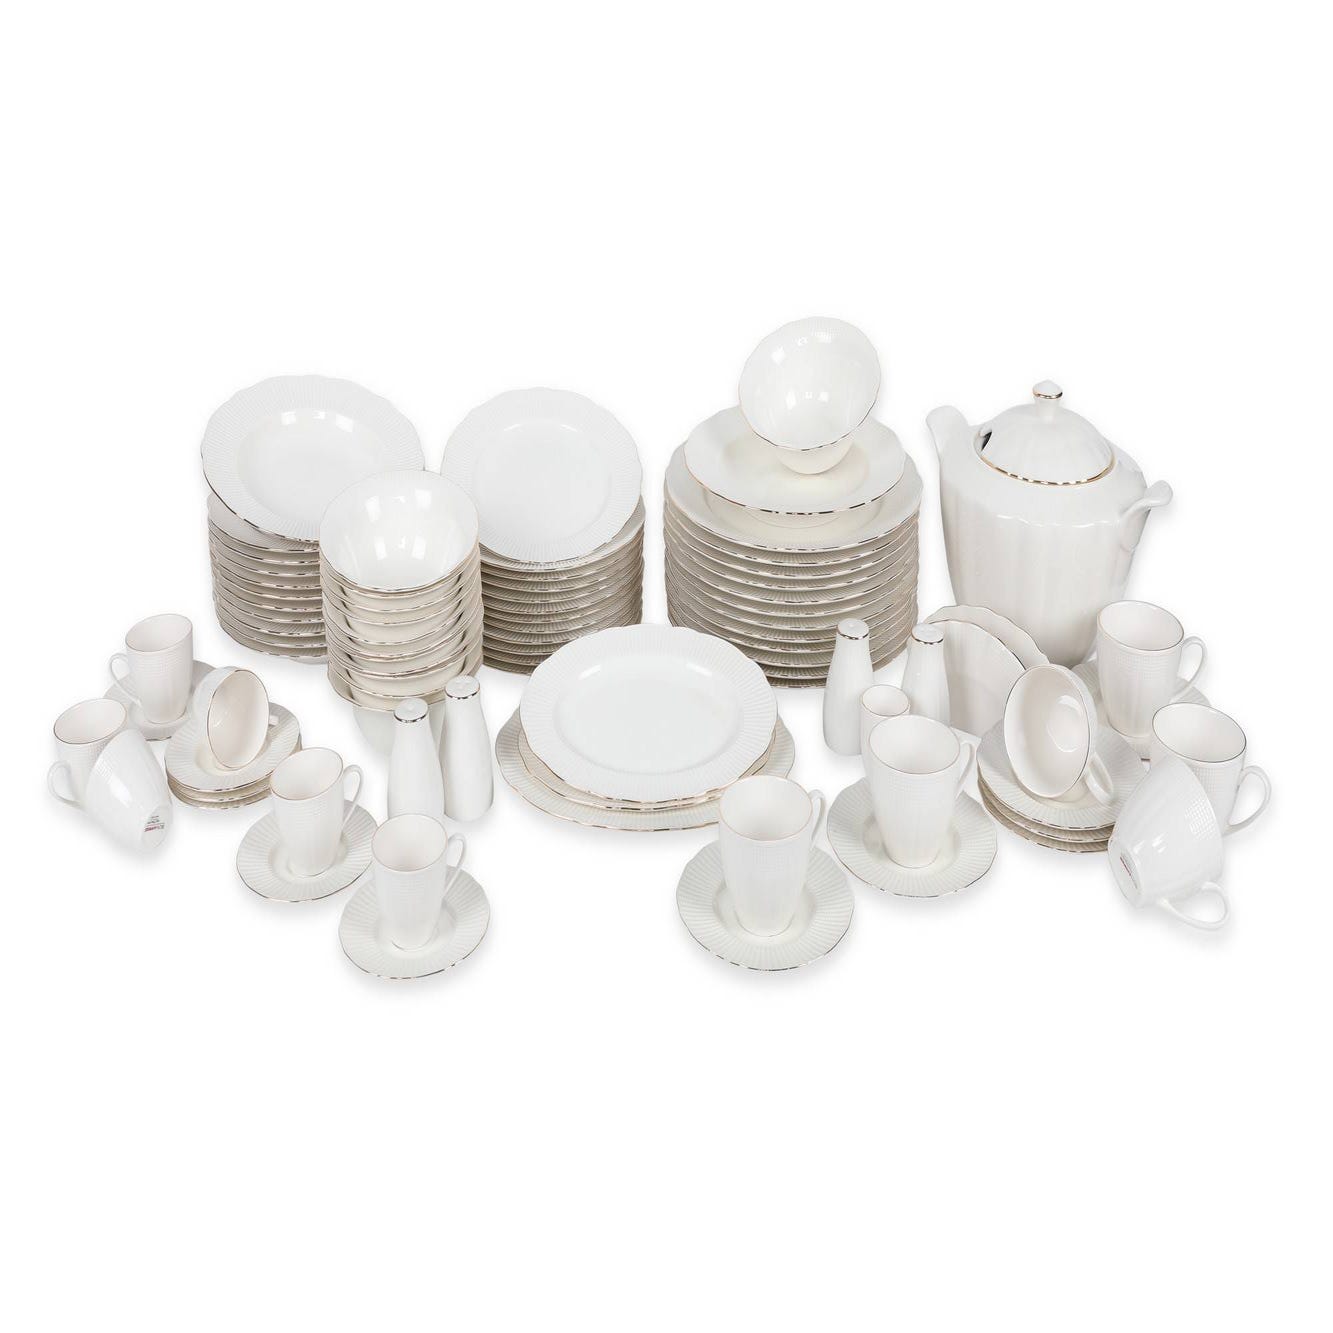 Service de table complet 83 pièces Barry 100% Porcelaine Blanc liseré Argent